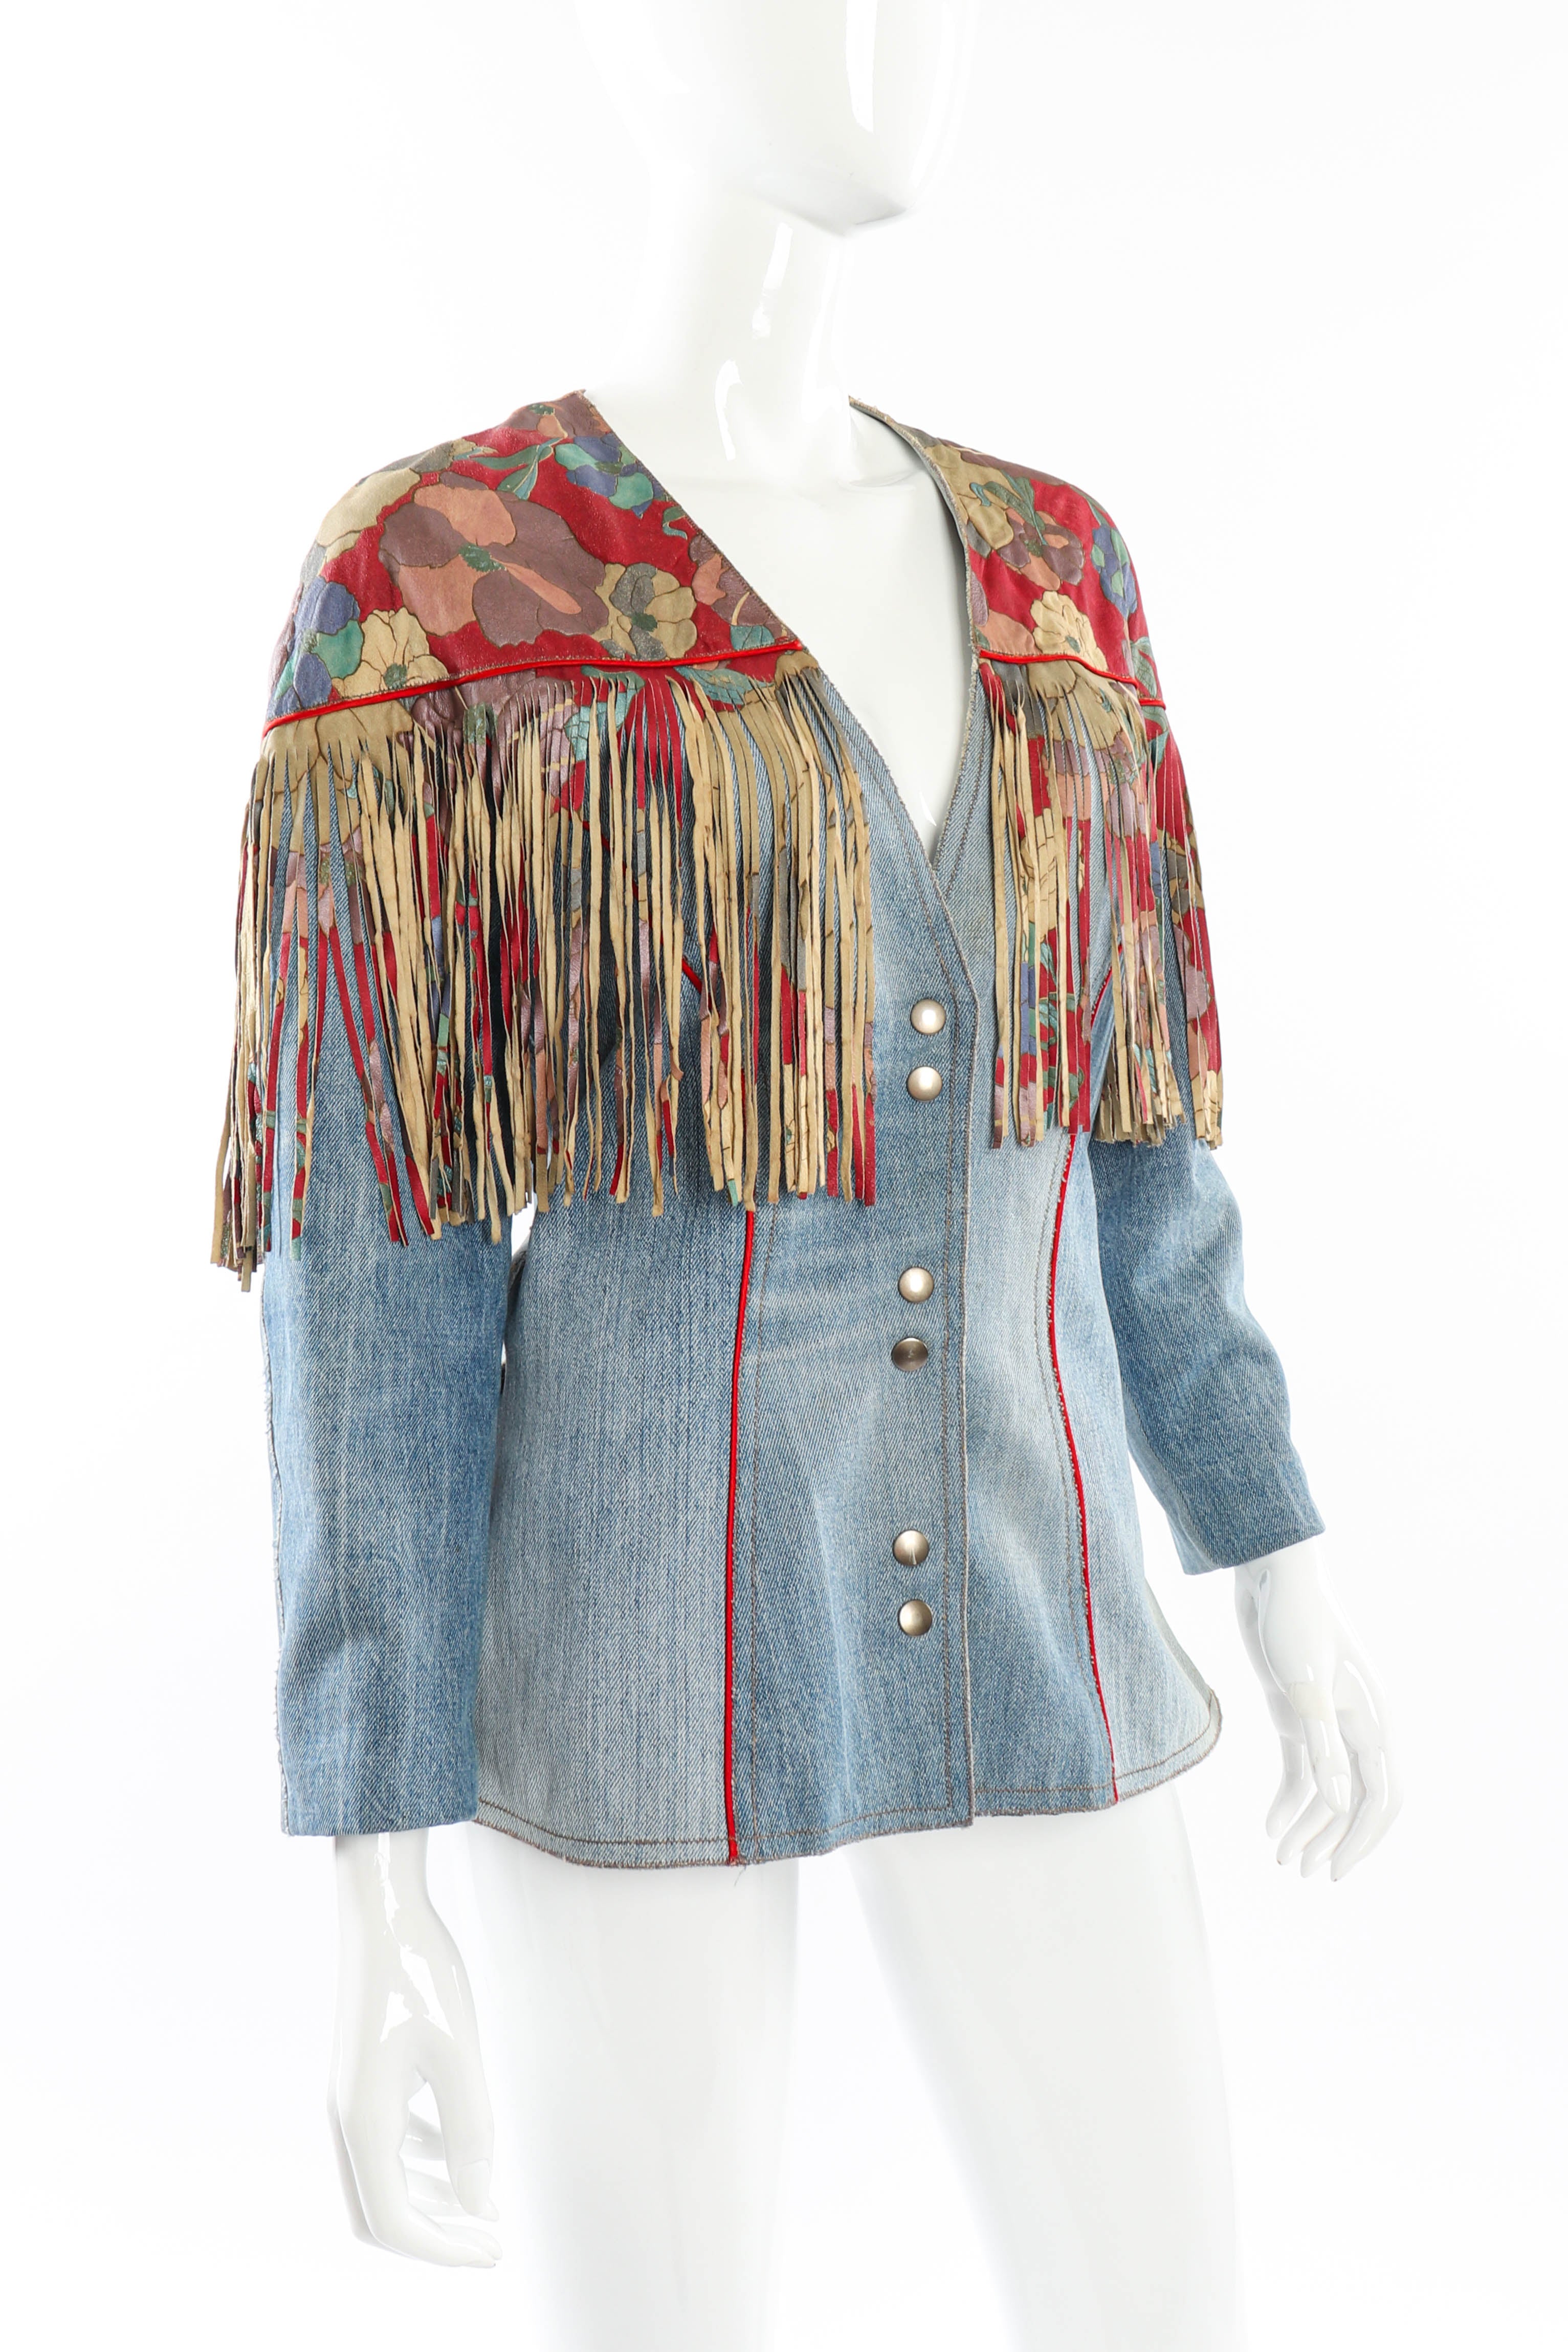 Vintage Roberto Cavalli Floral Denim and Leather Fringe Jacket 3/4 front on mannequin @recessla